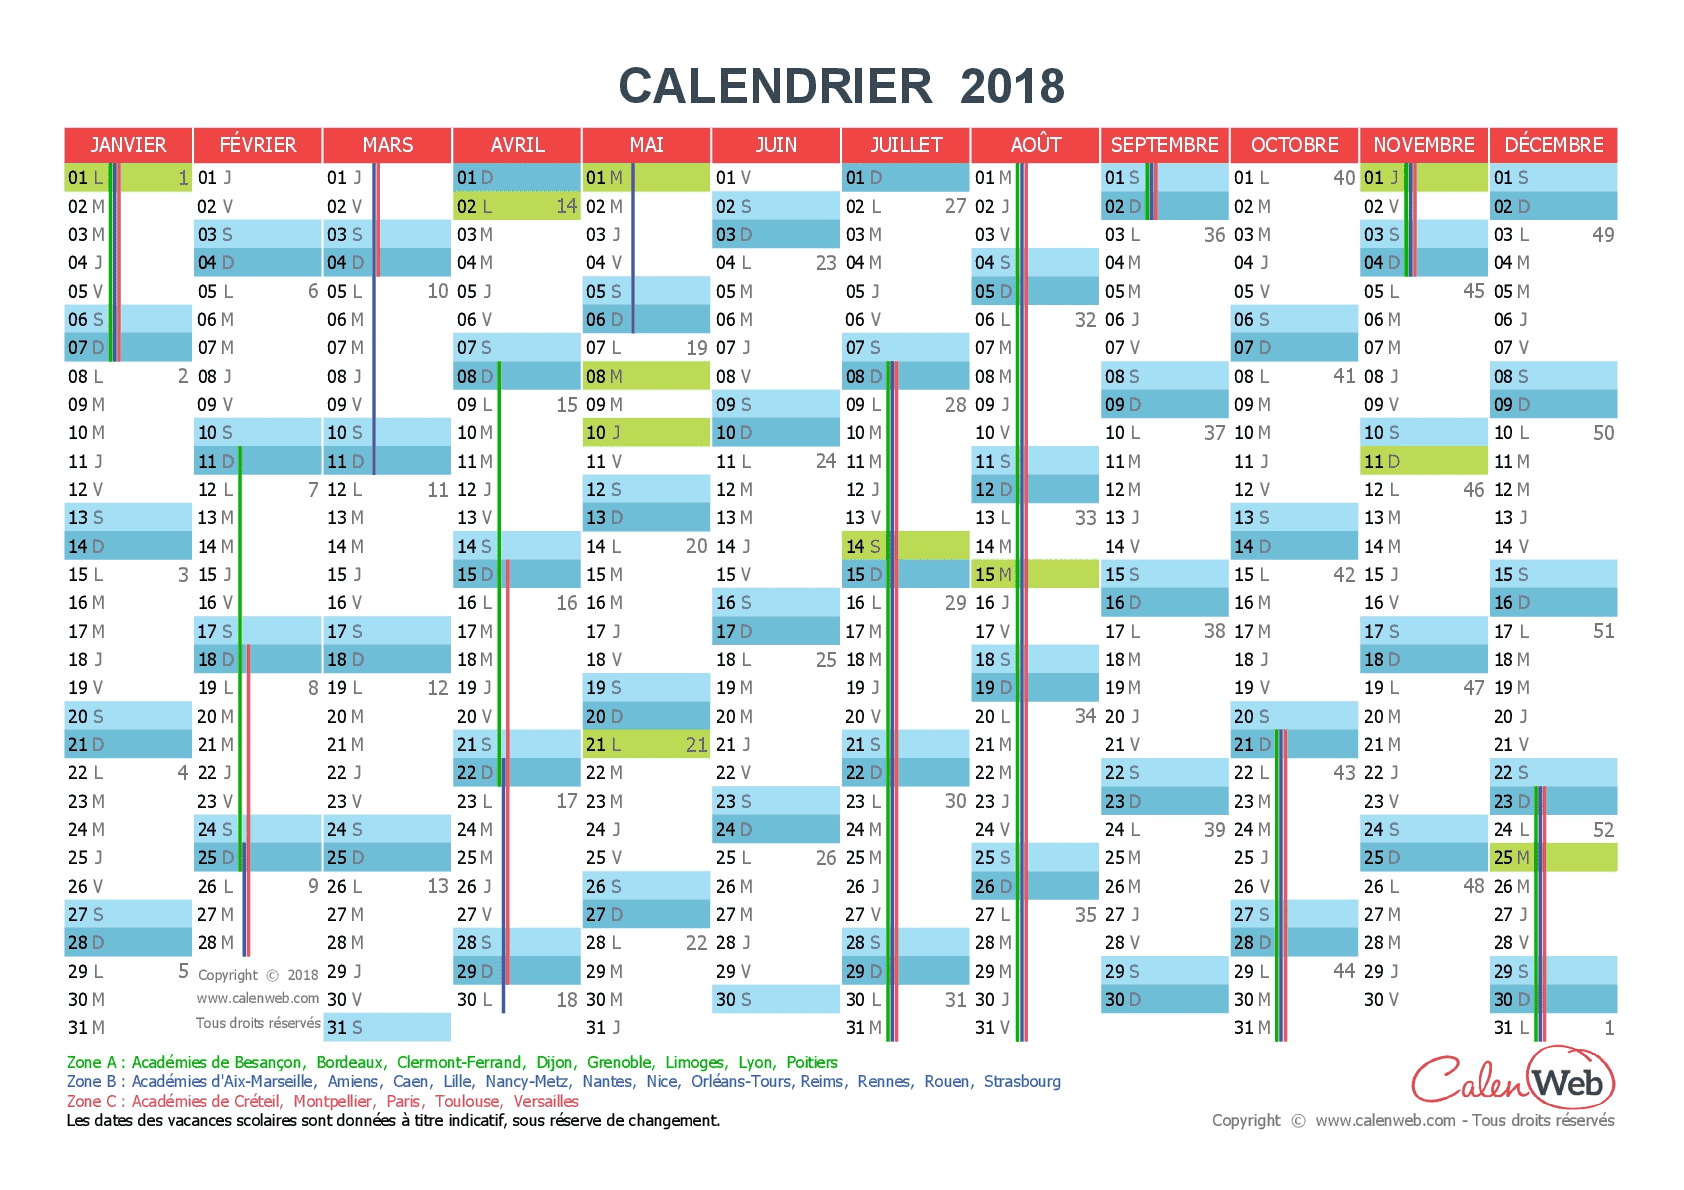 Calendrier 2018 à Imprimer Jours Fériés Vacances Calendriers Pdf